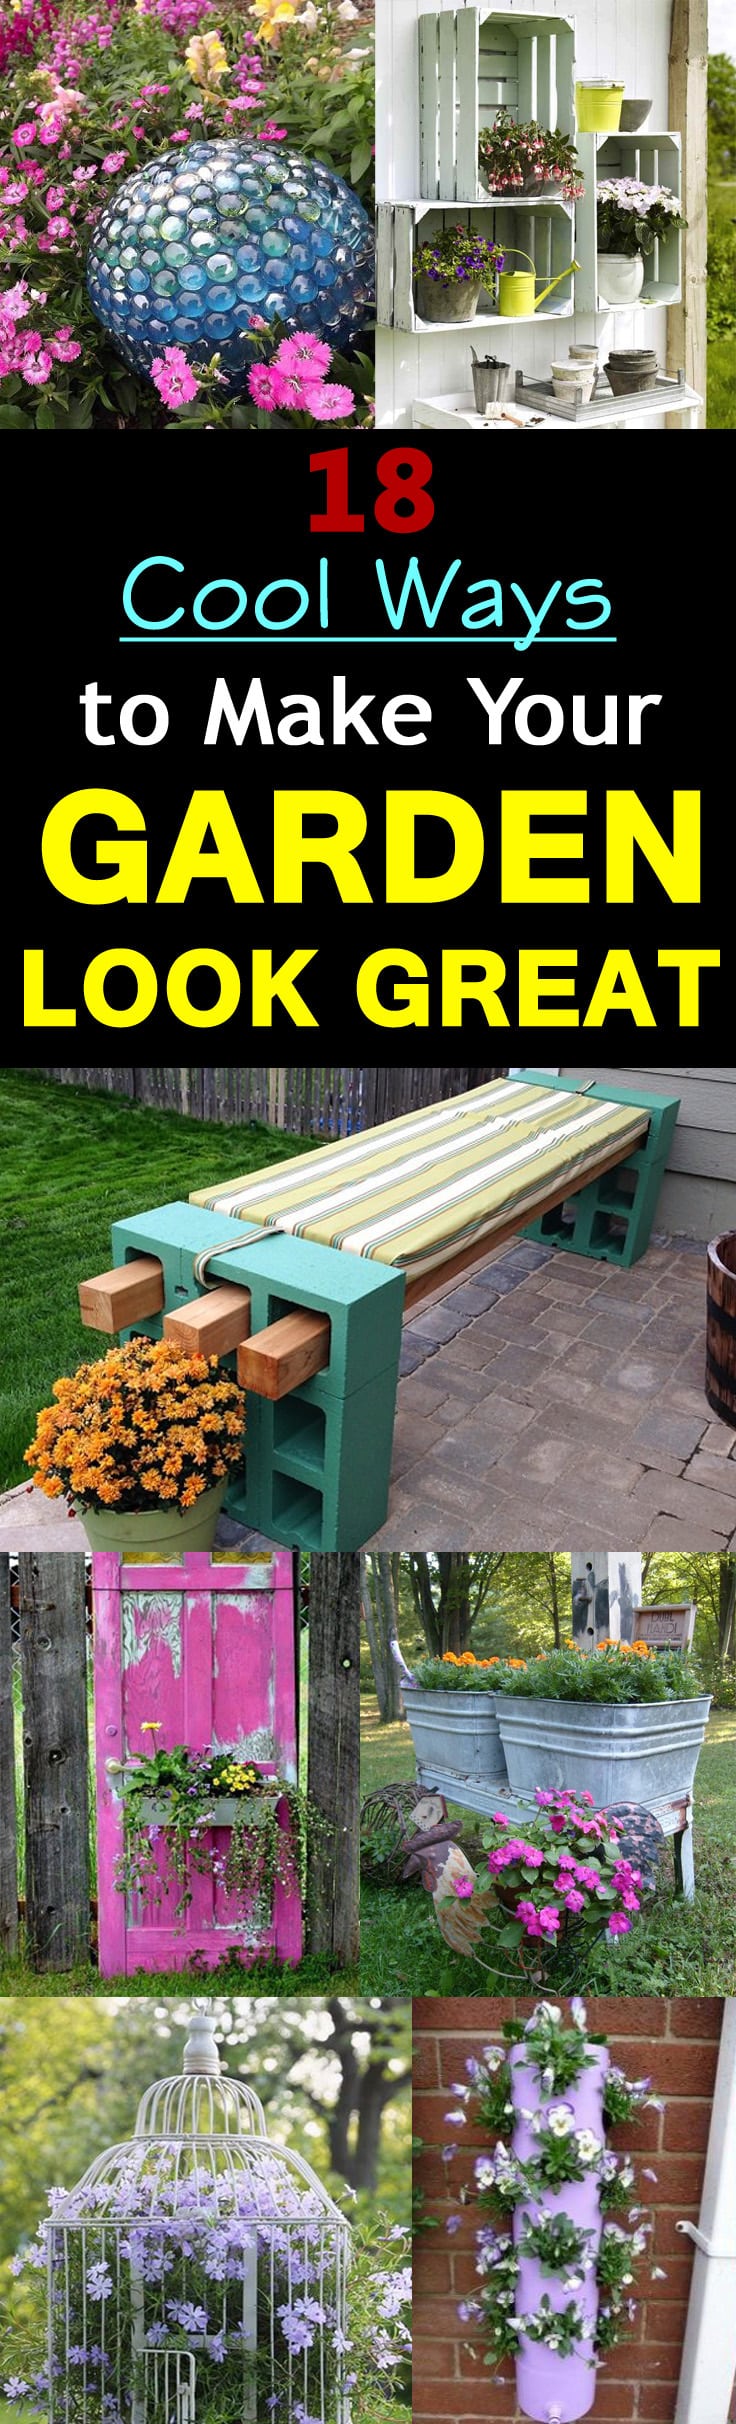 18 Cool DIY Ideas To Make Your Garden Look Great | Balcony Garden Web